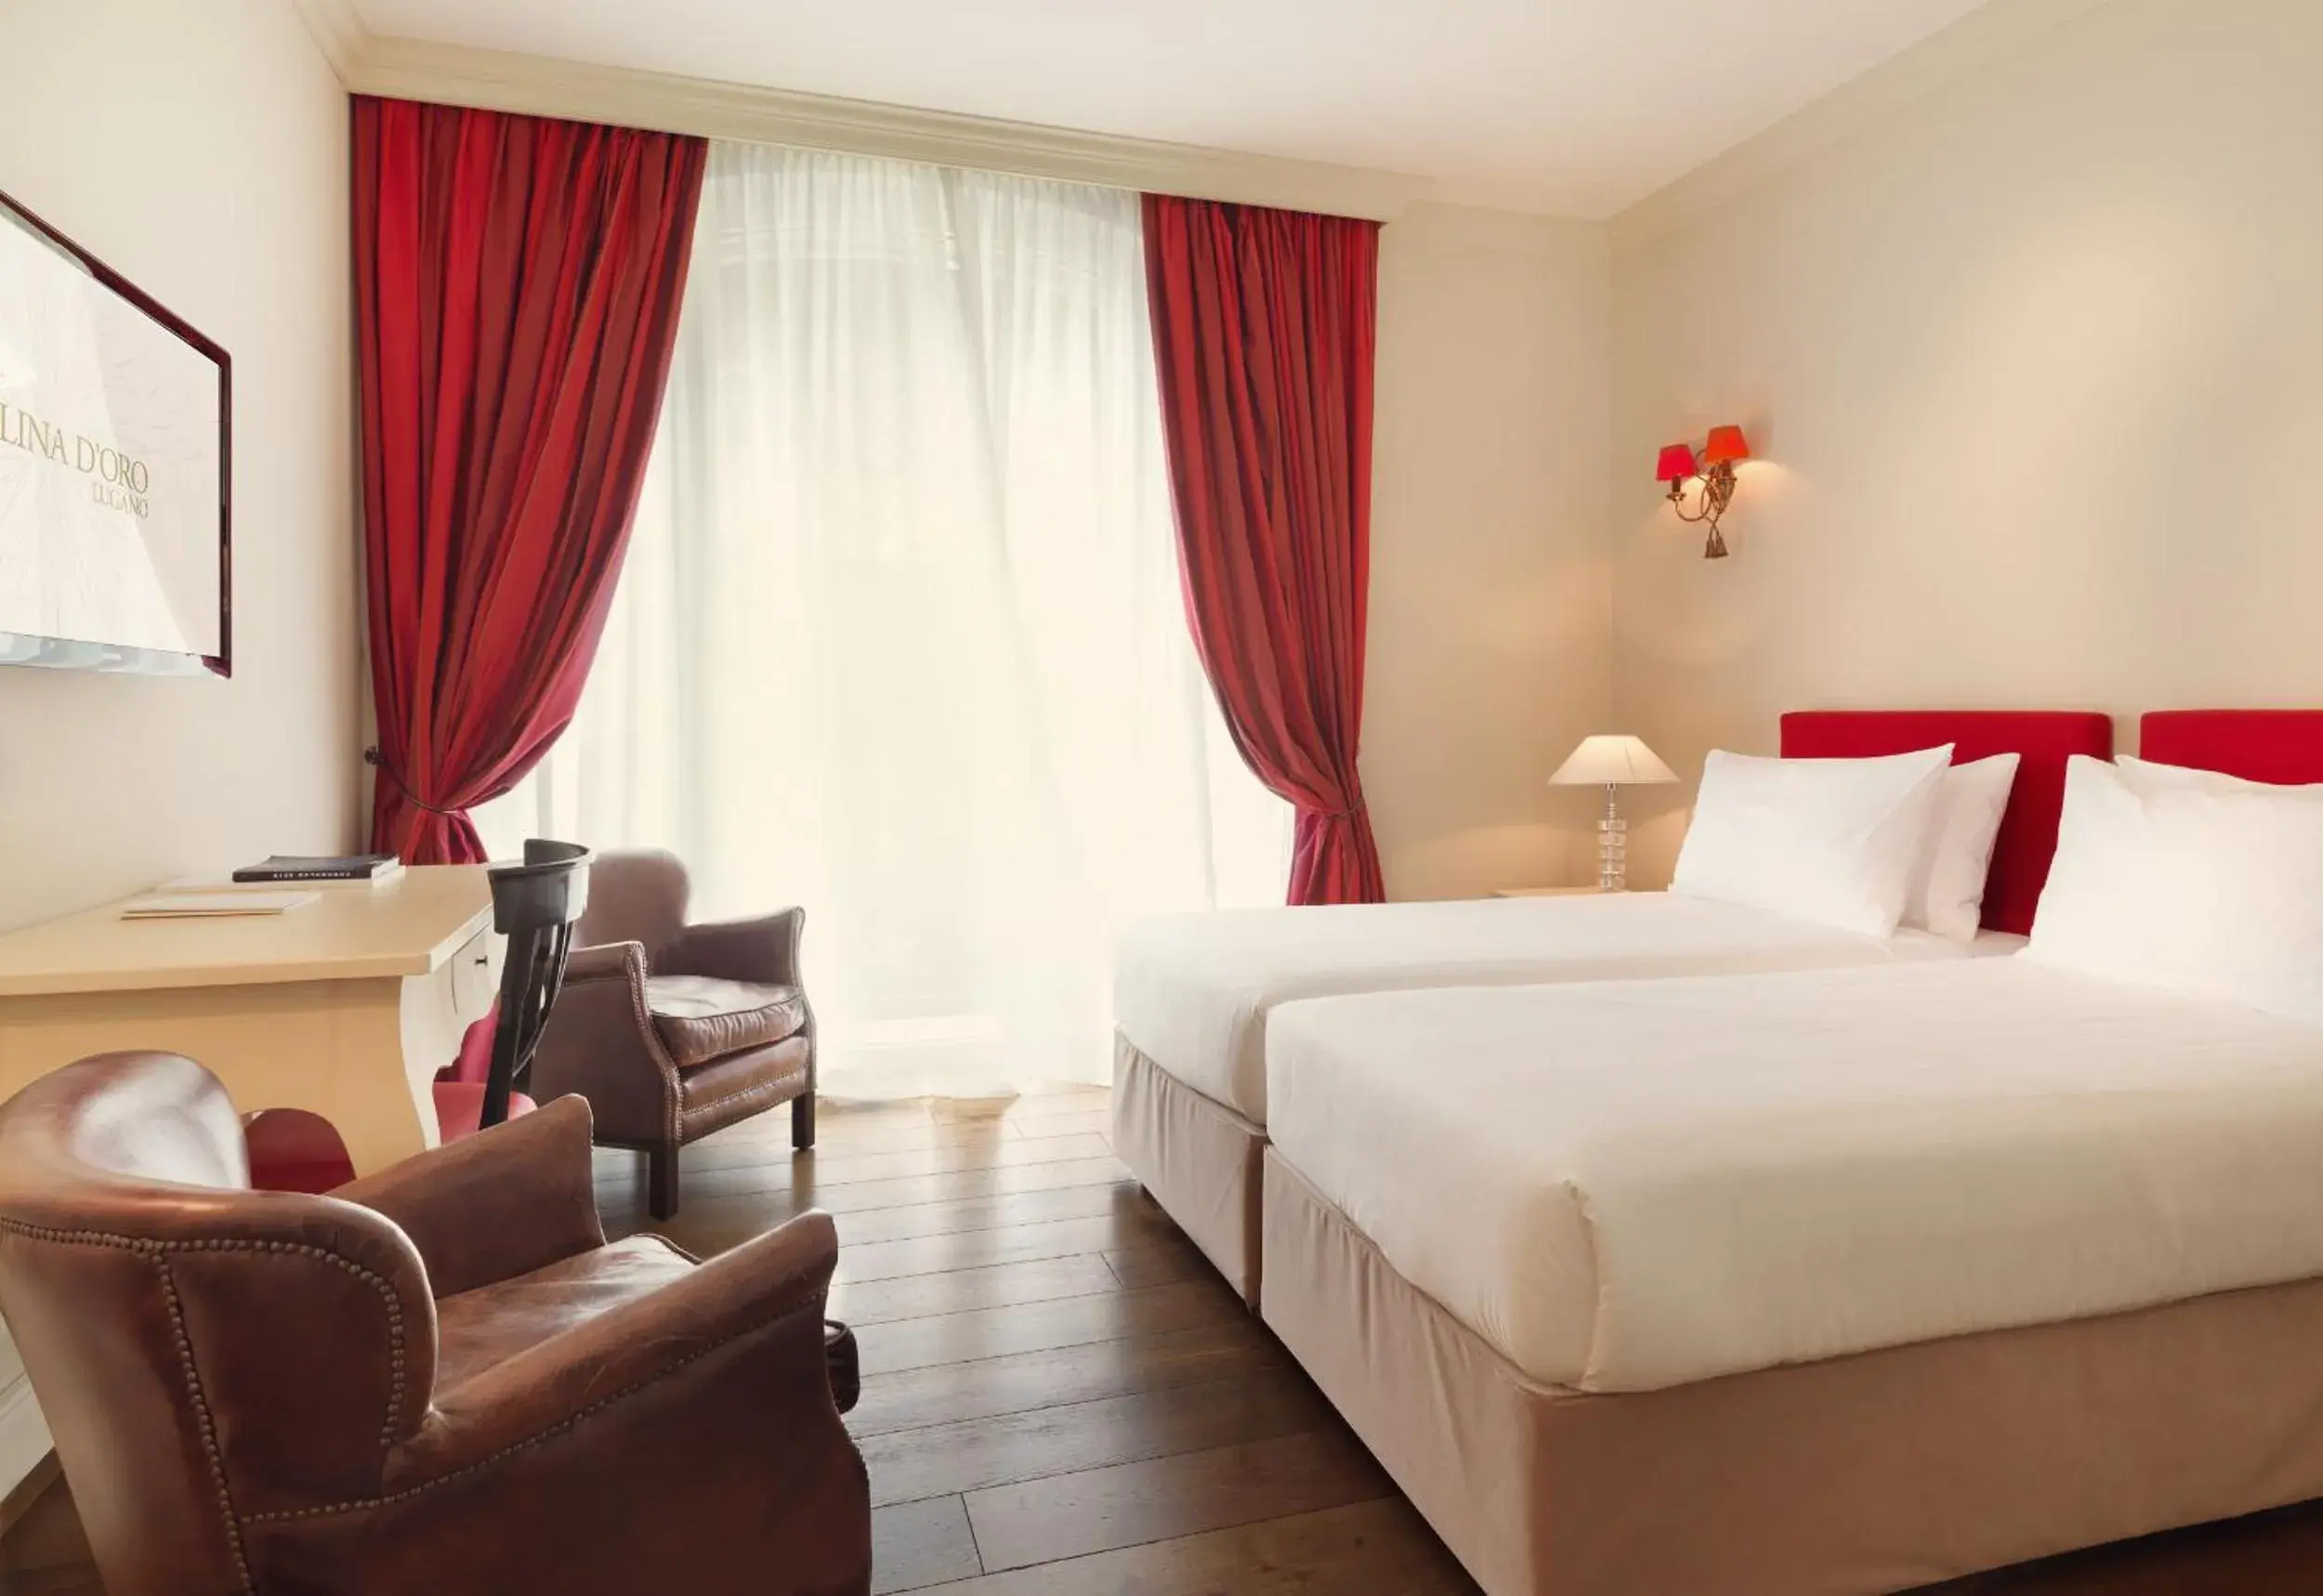 Bedroom in Resort Collina d'Oro - Hotel, Residence & Spa